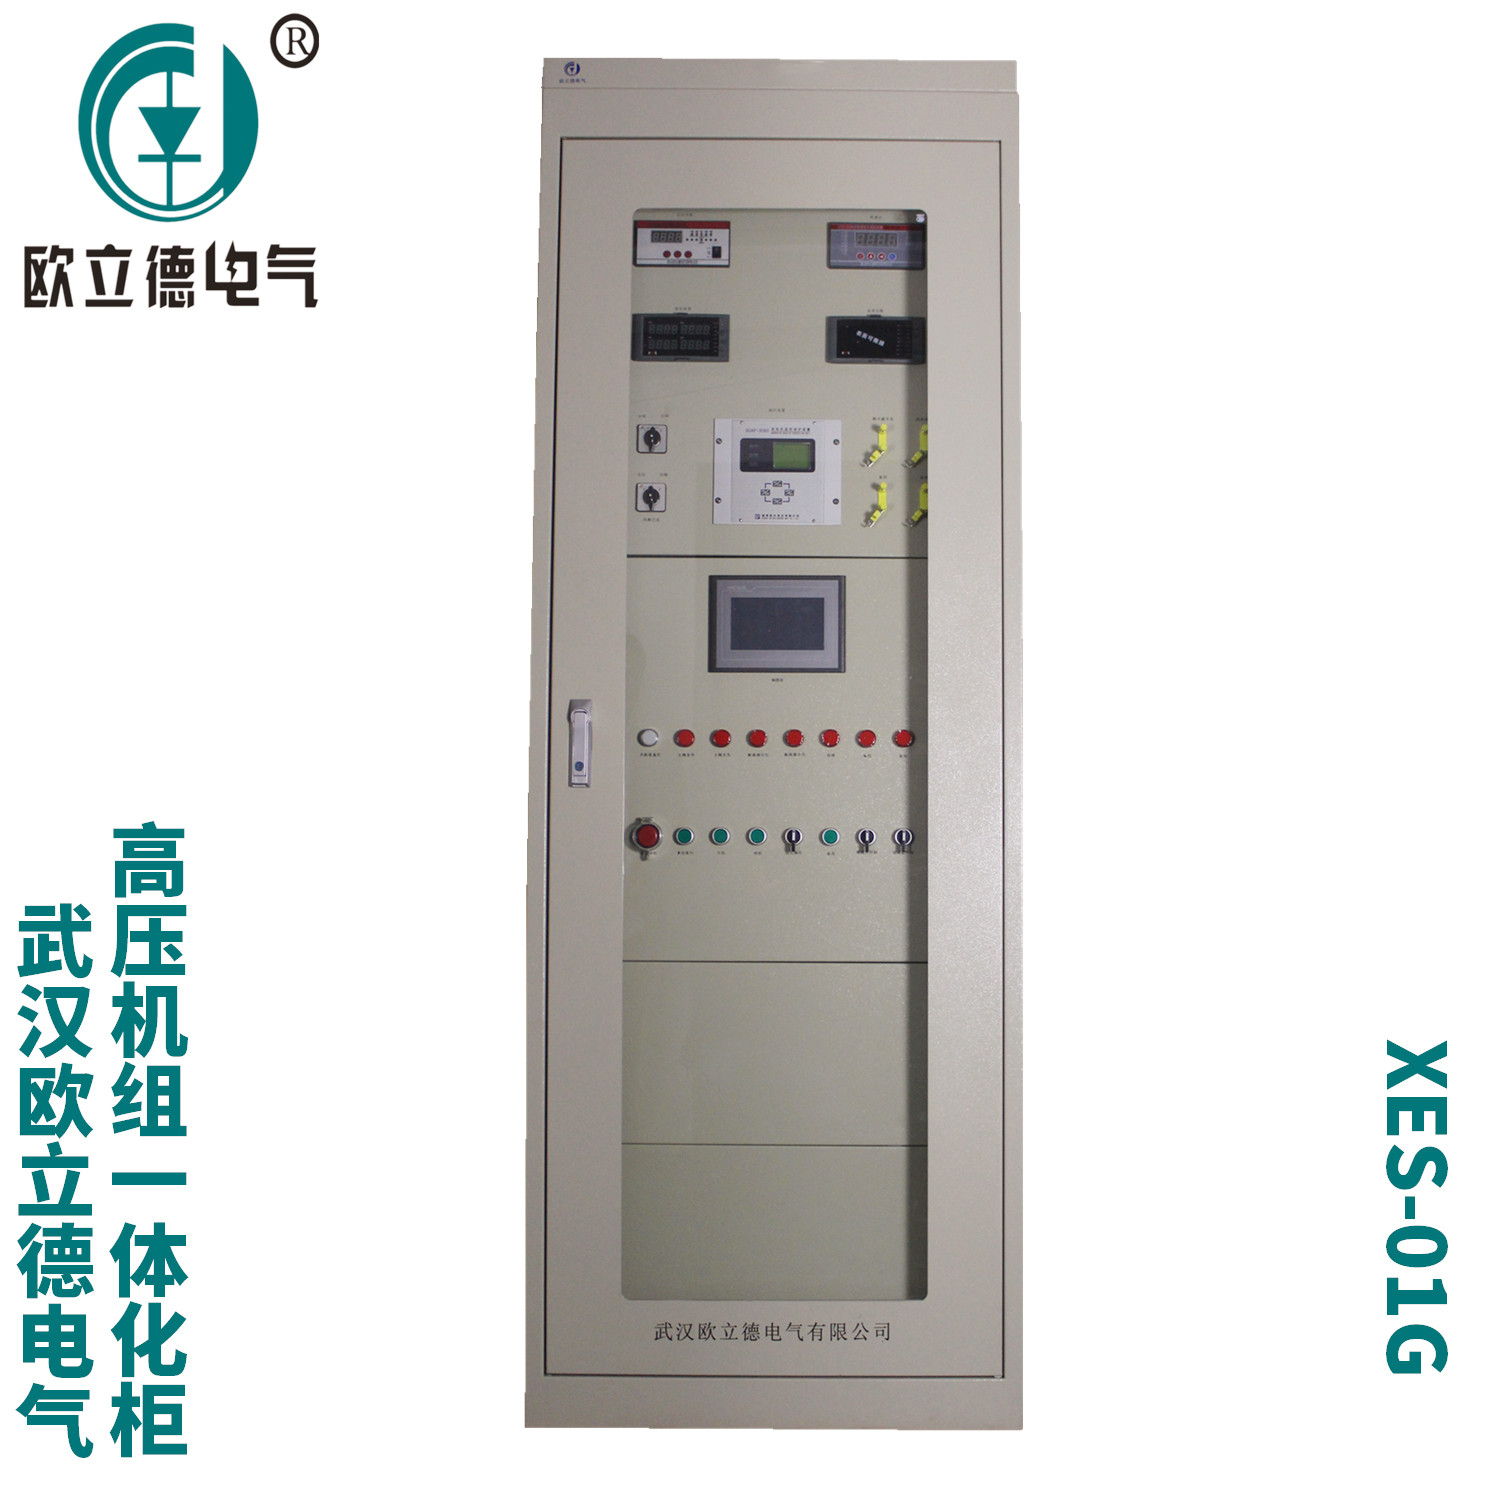 武汉欧立德XES-01G-402高压机组一体化控制柜